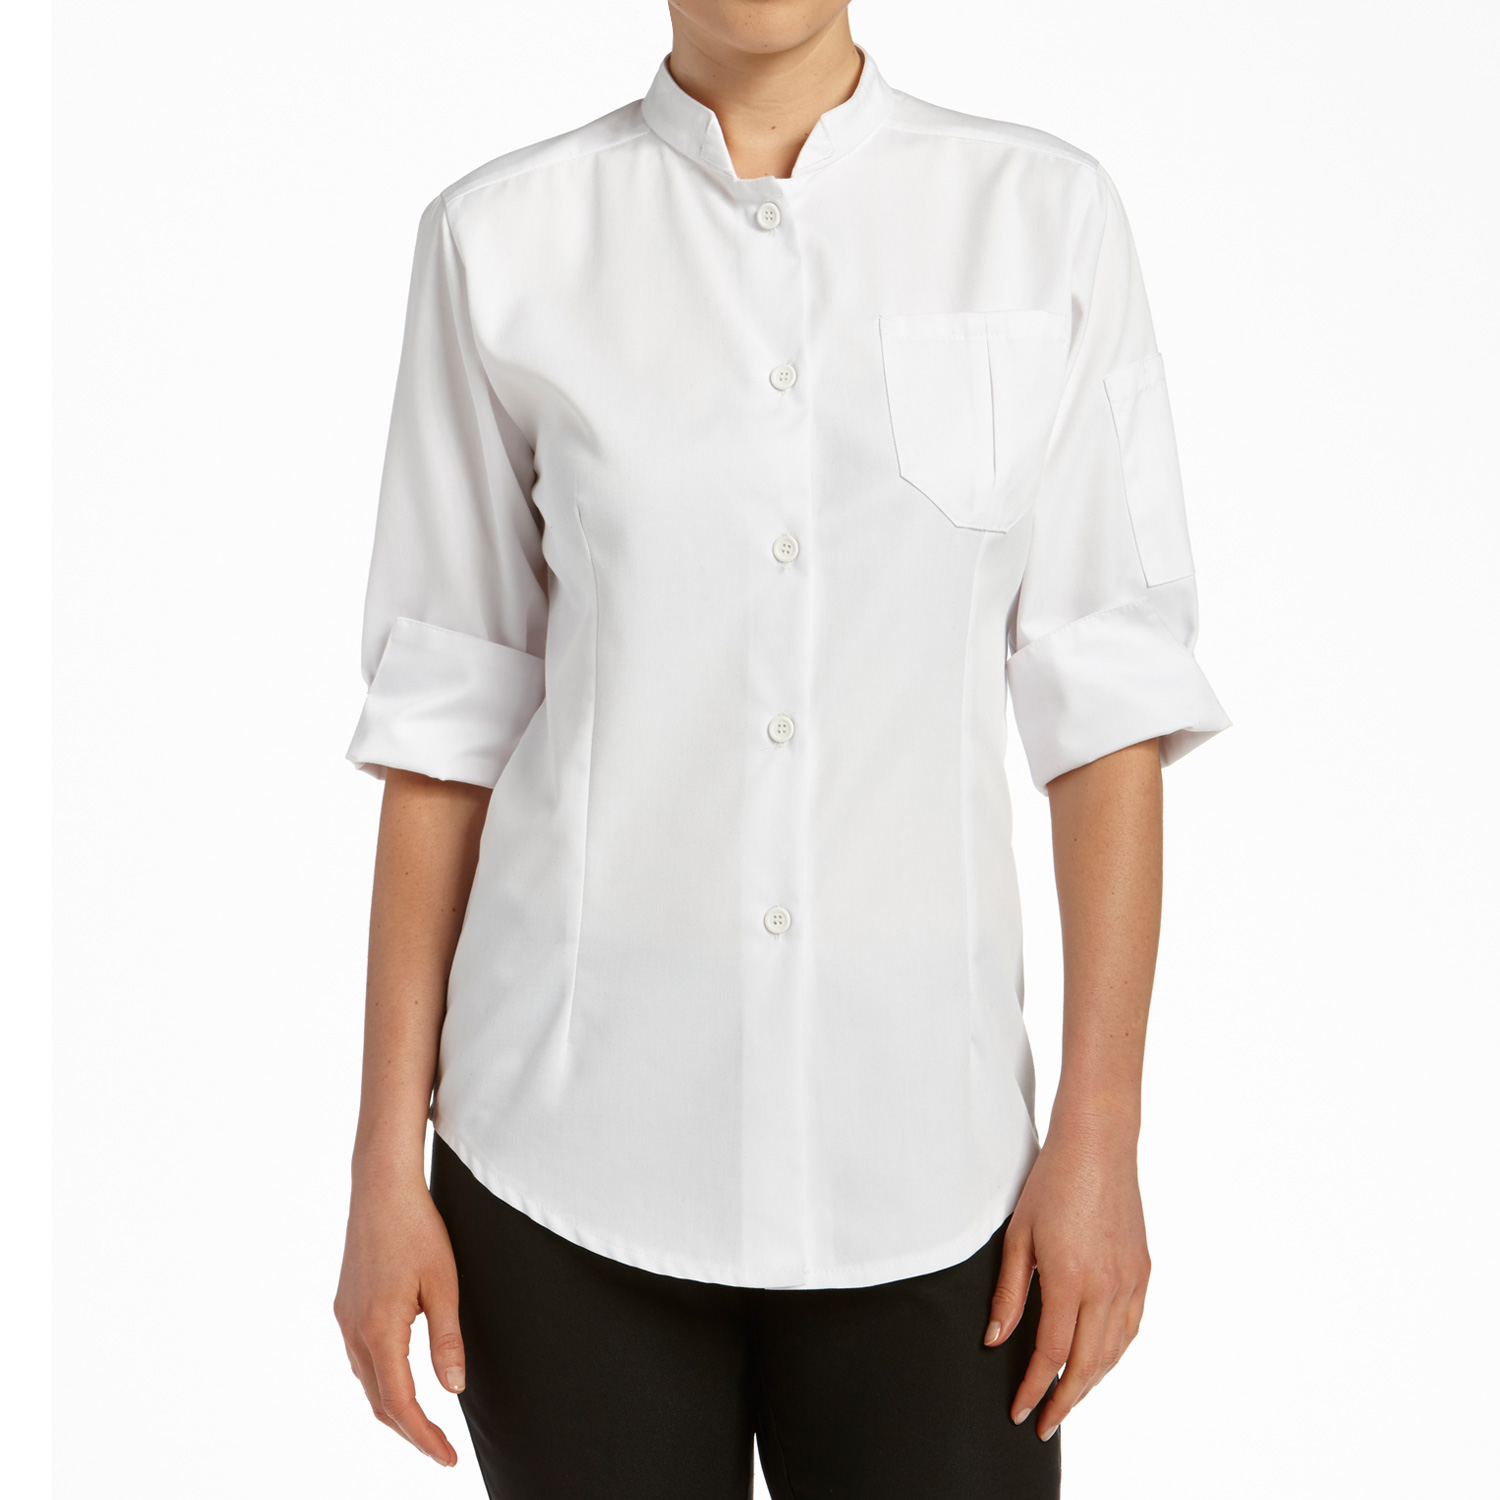 Women's Classic 3/4 Sleeve Shirt (CW4480)